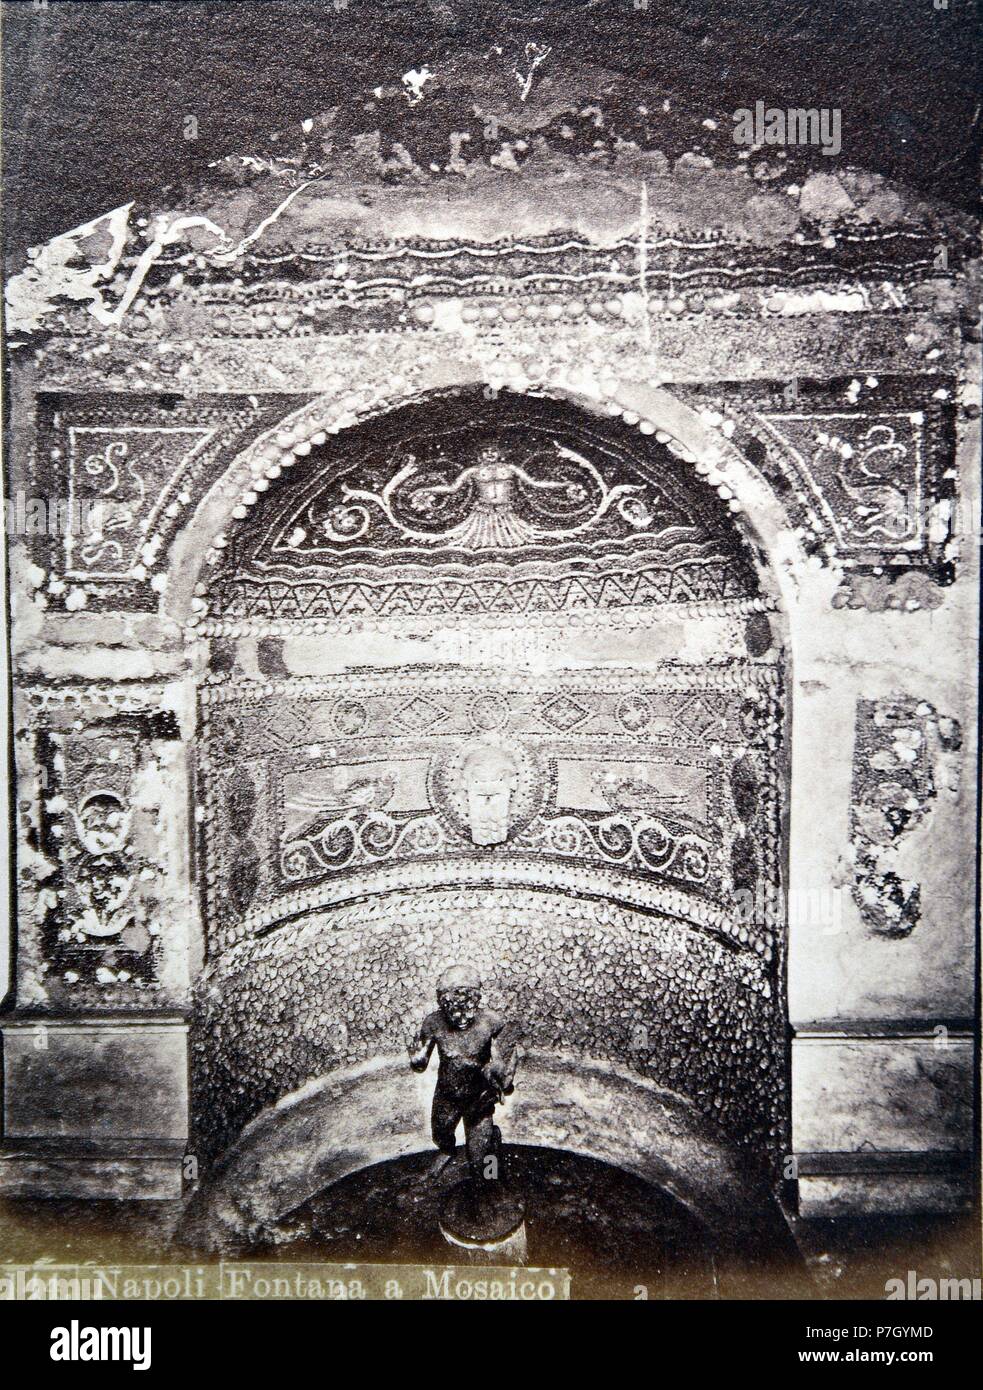 Napoli. Fontana a mosaico. Stock Photo